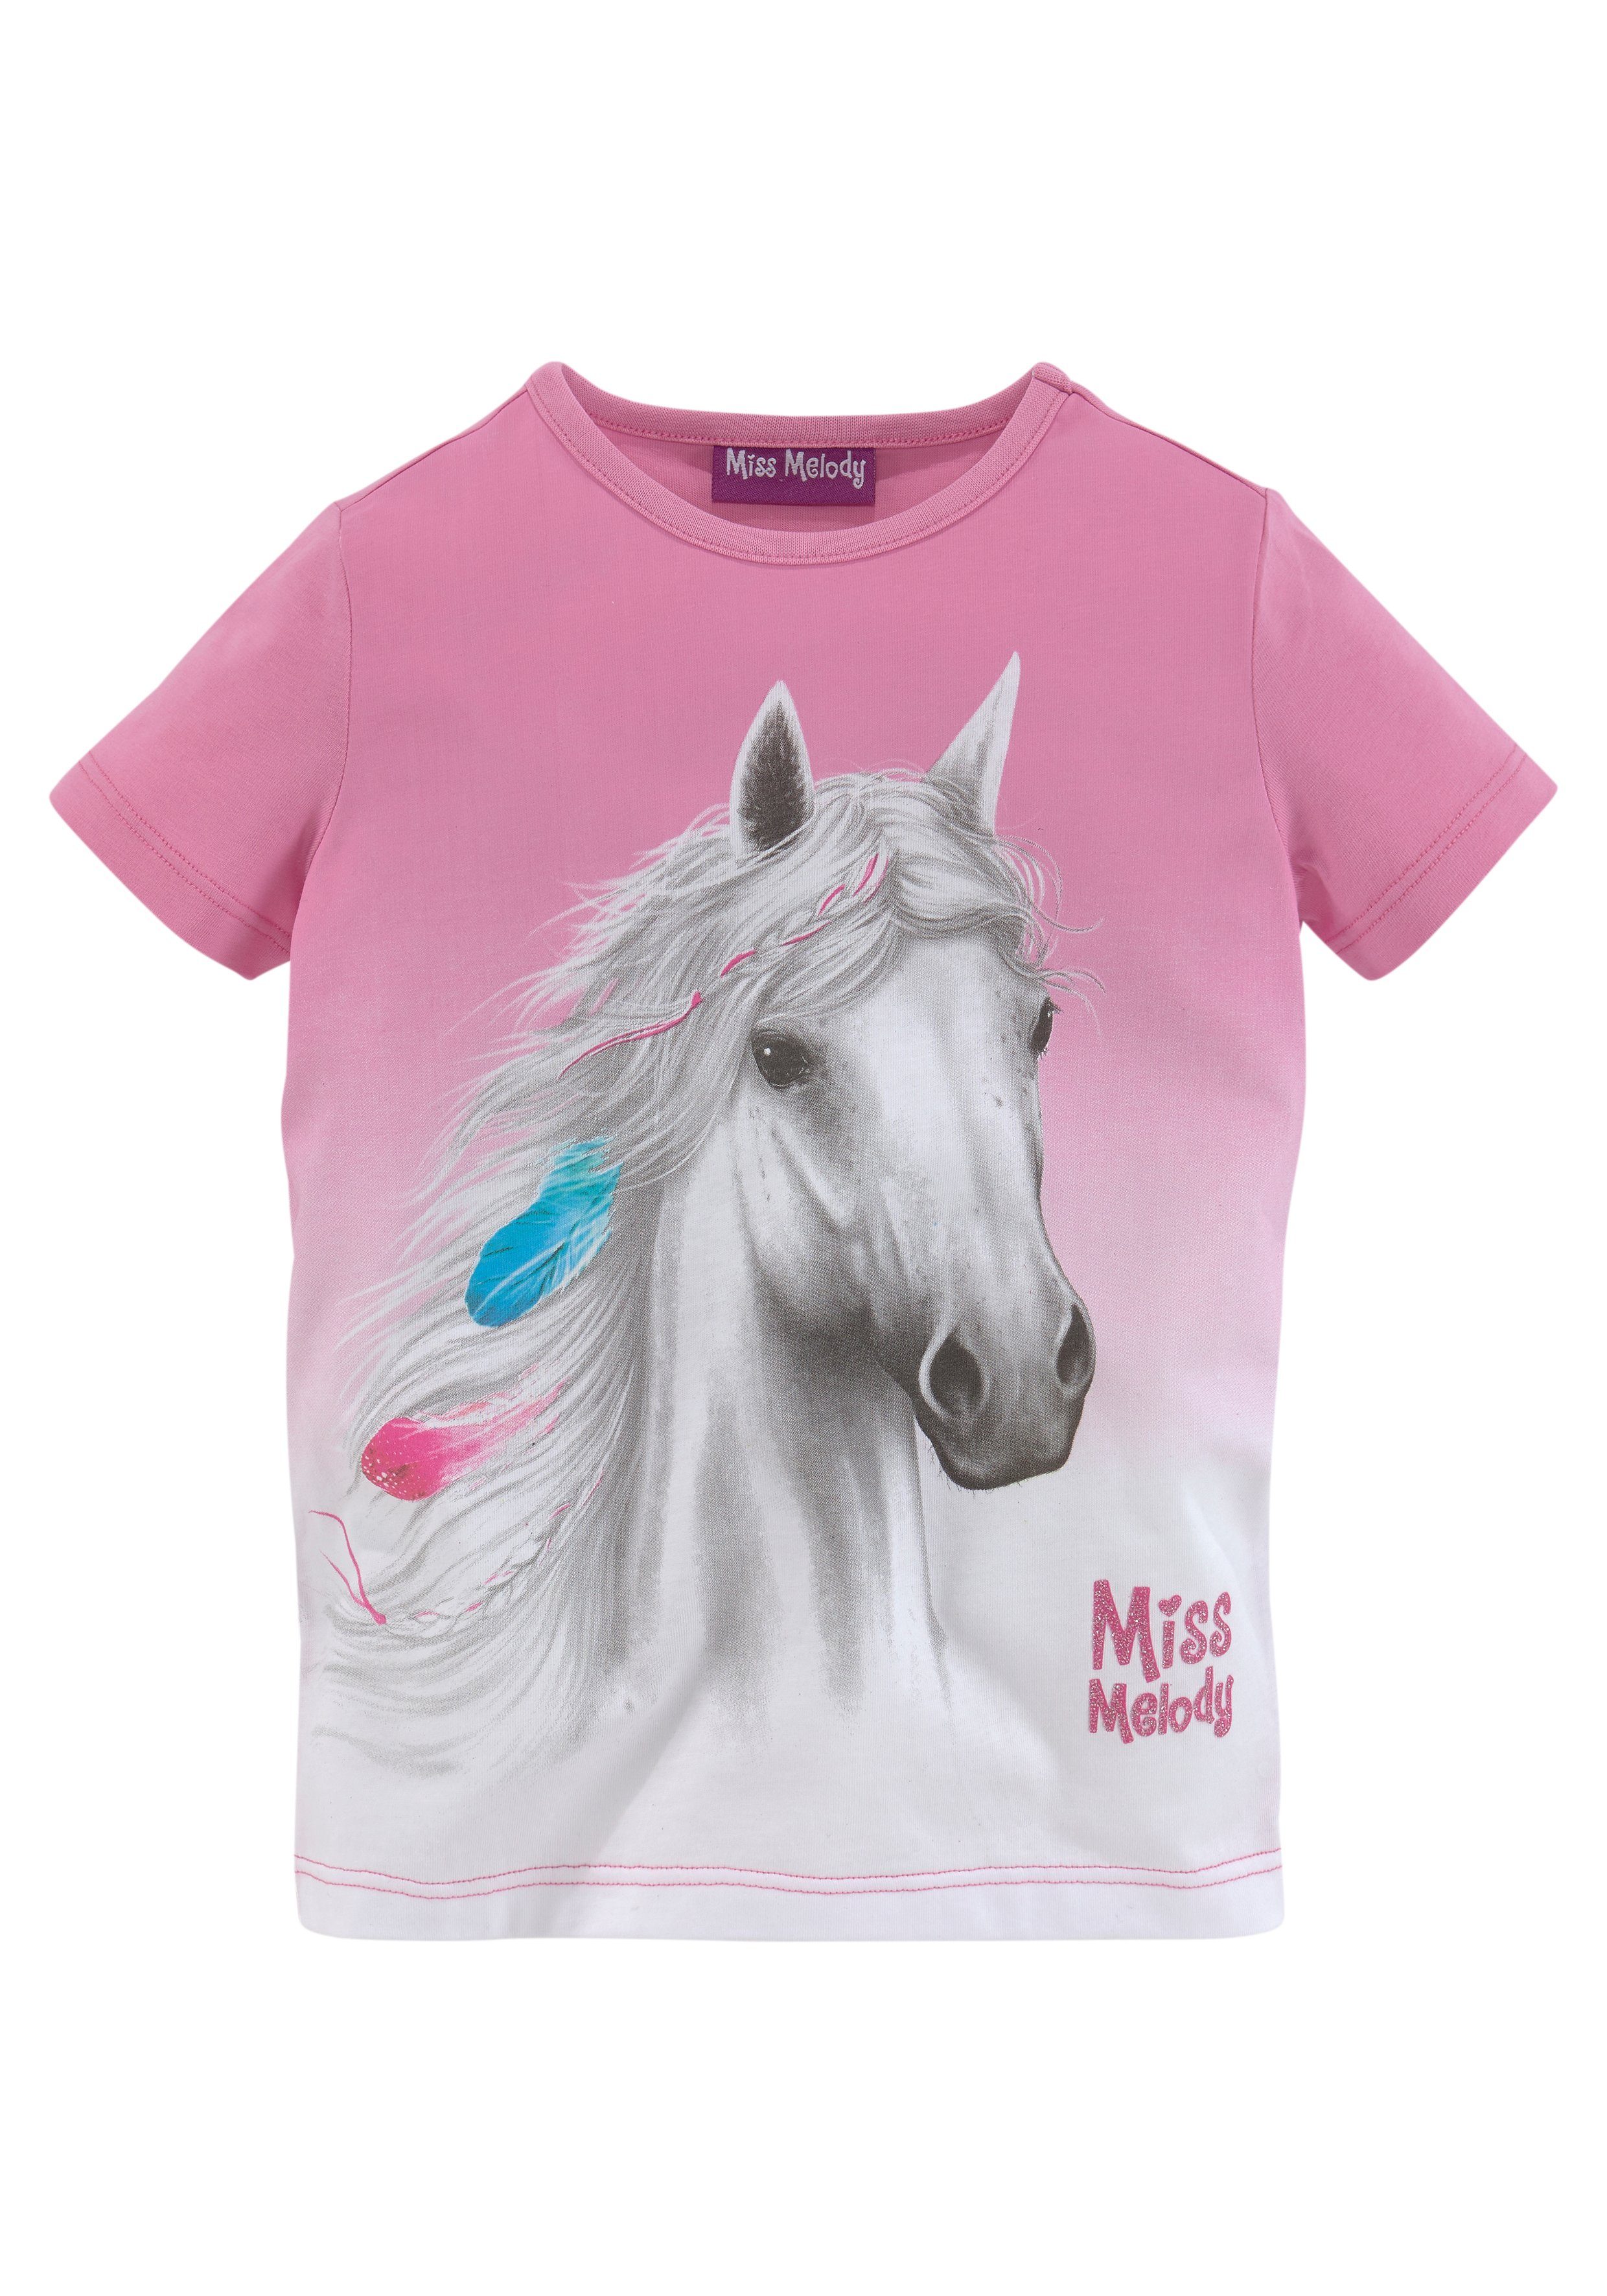 Miss schönem Melody mit Pferdemotiv T-Shirt